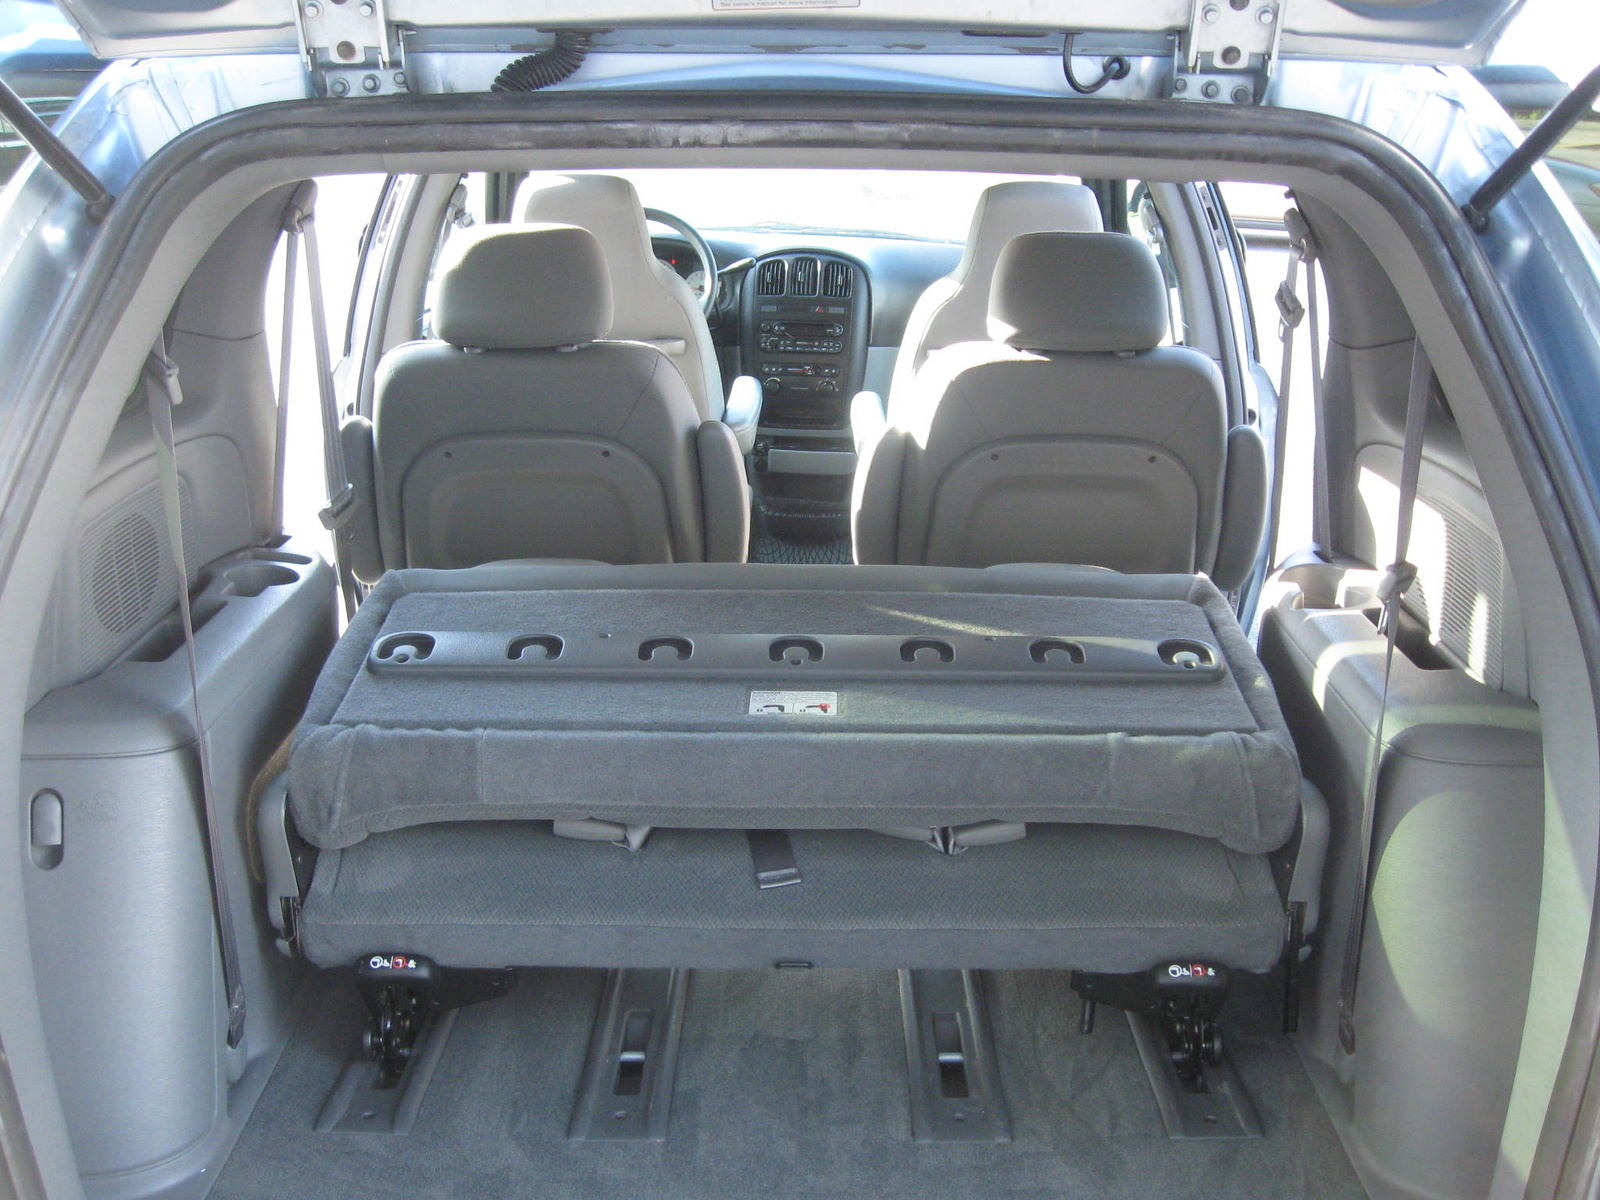 2004 Dodge Caravan Vin Check Specs Recalls Autodetective